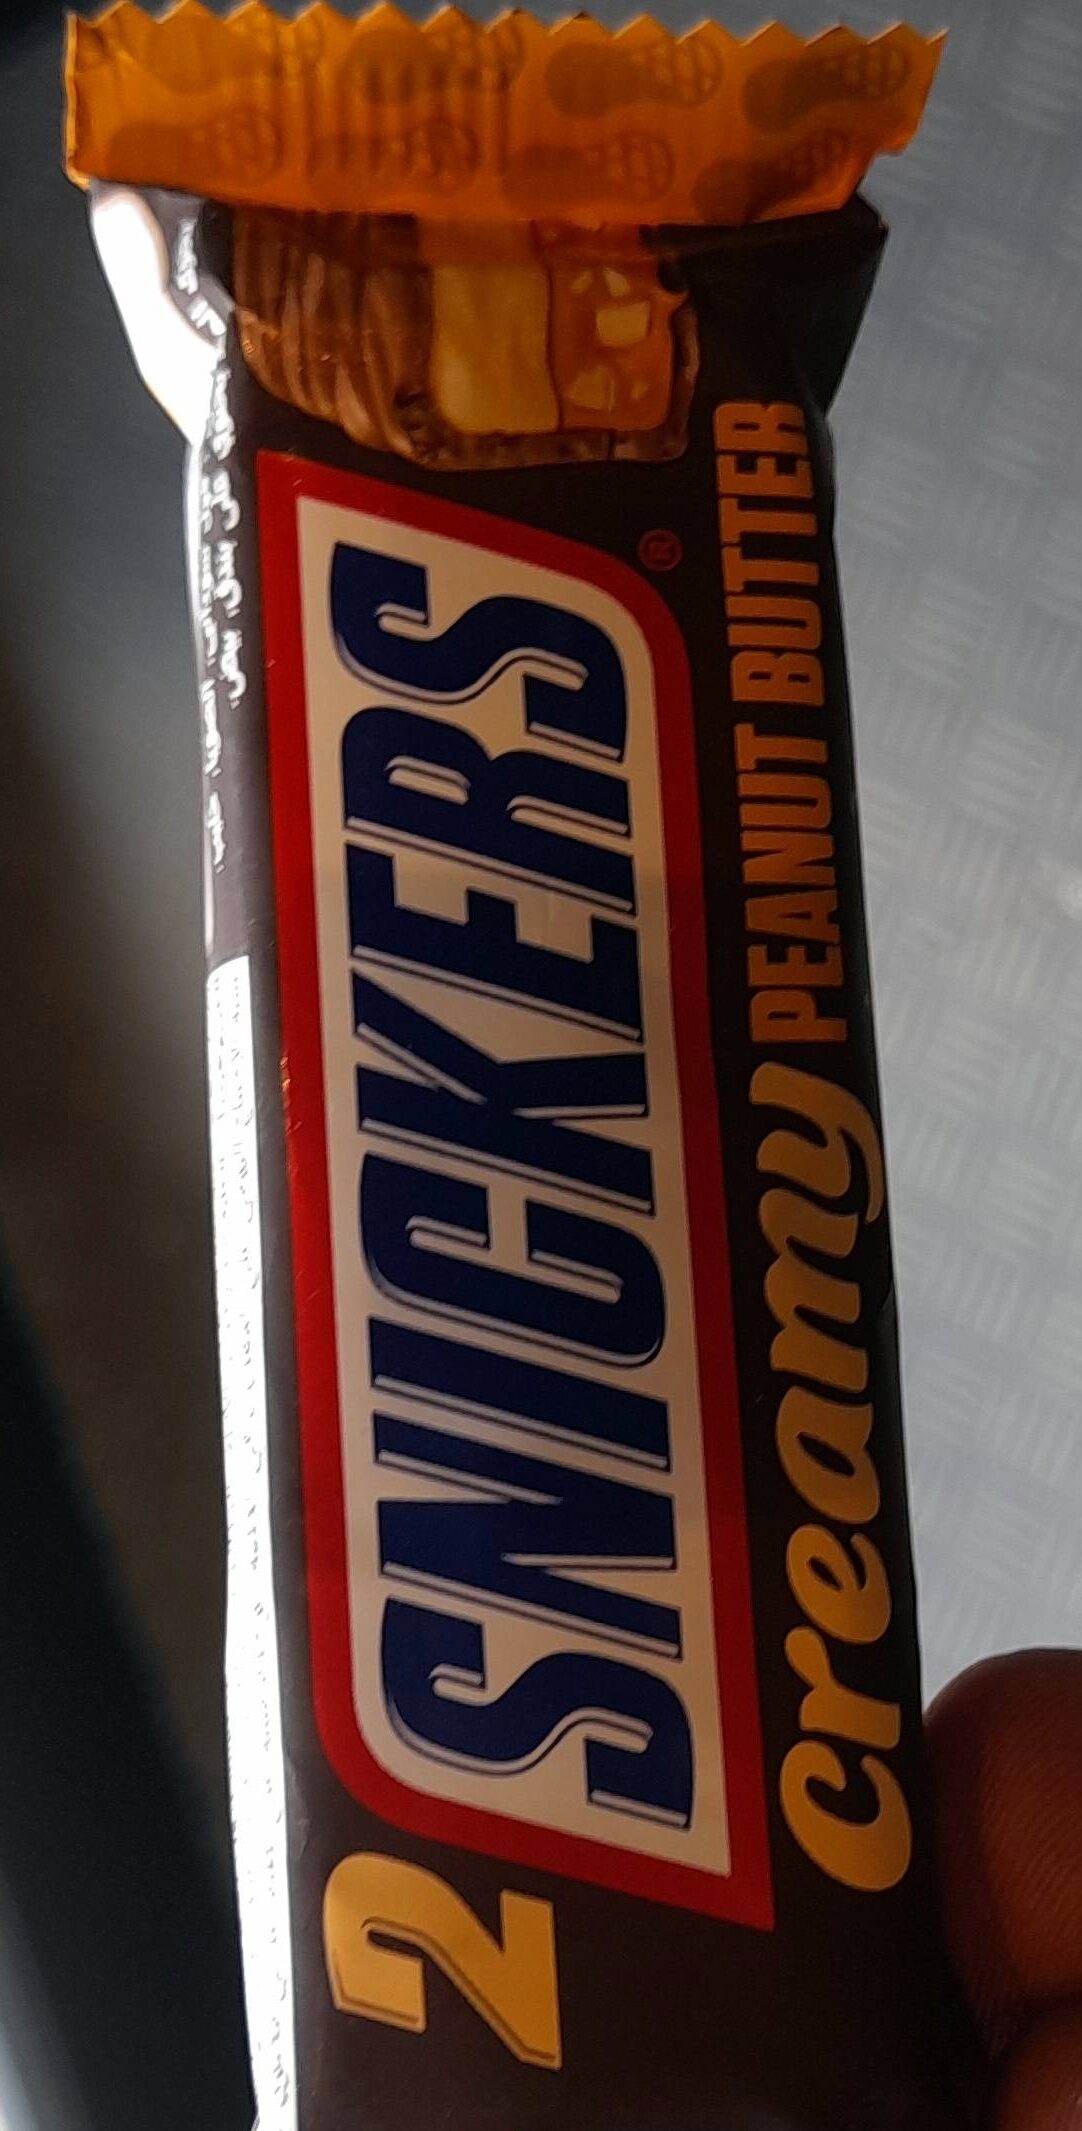 Snickers Creamy Peanut Butter - Produkt - en